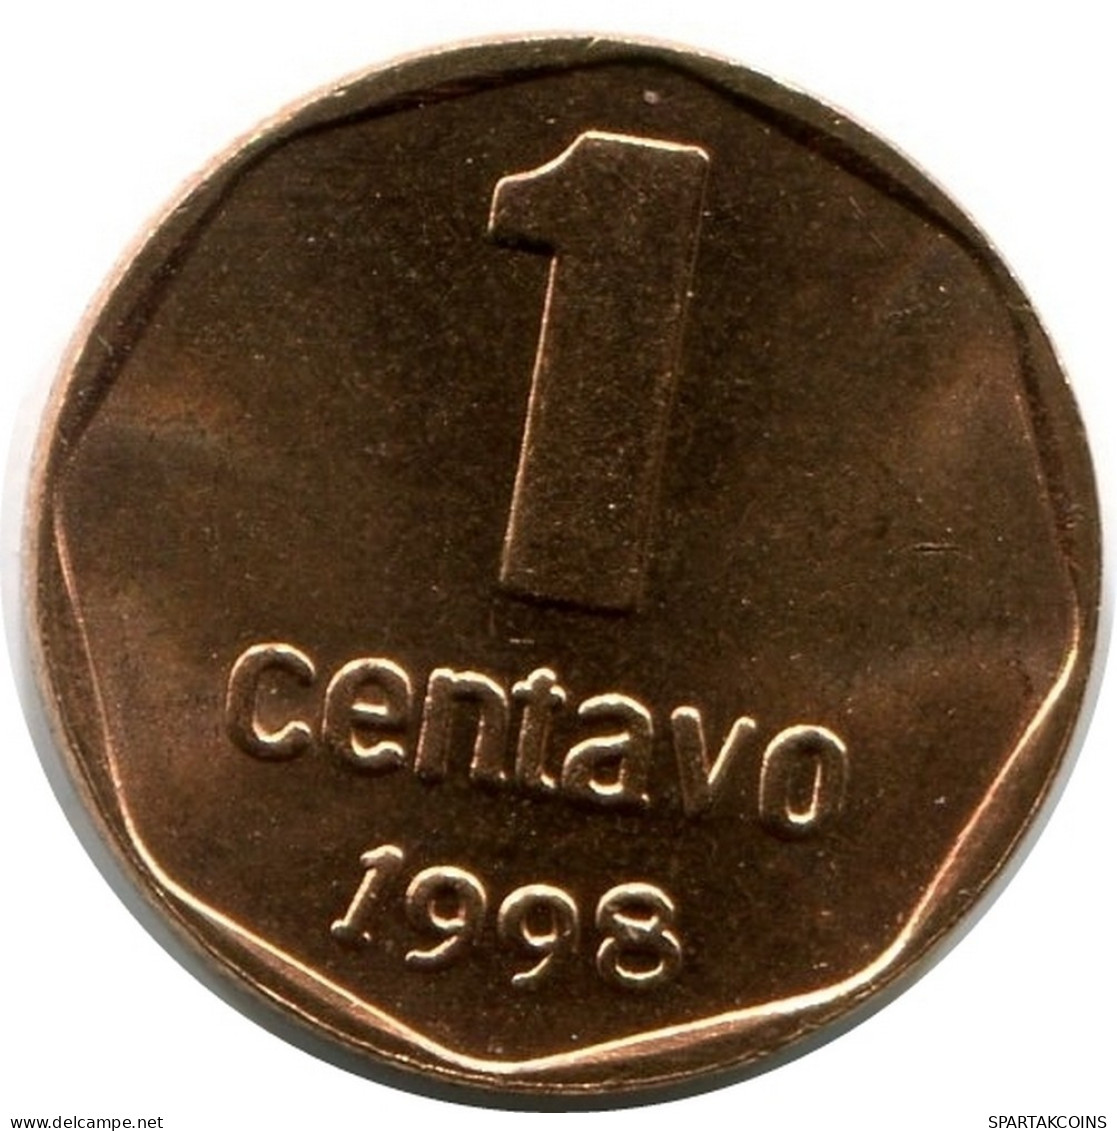 1 CENTAVO 1998 ARGENTINA Coin UNC #M10131.U.A - Argentine